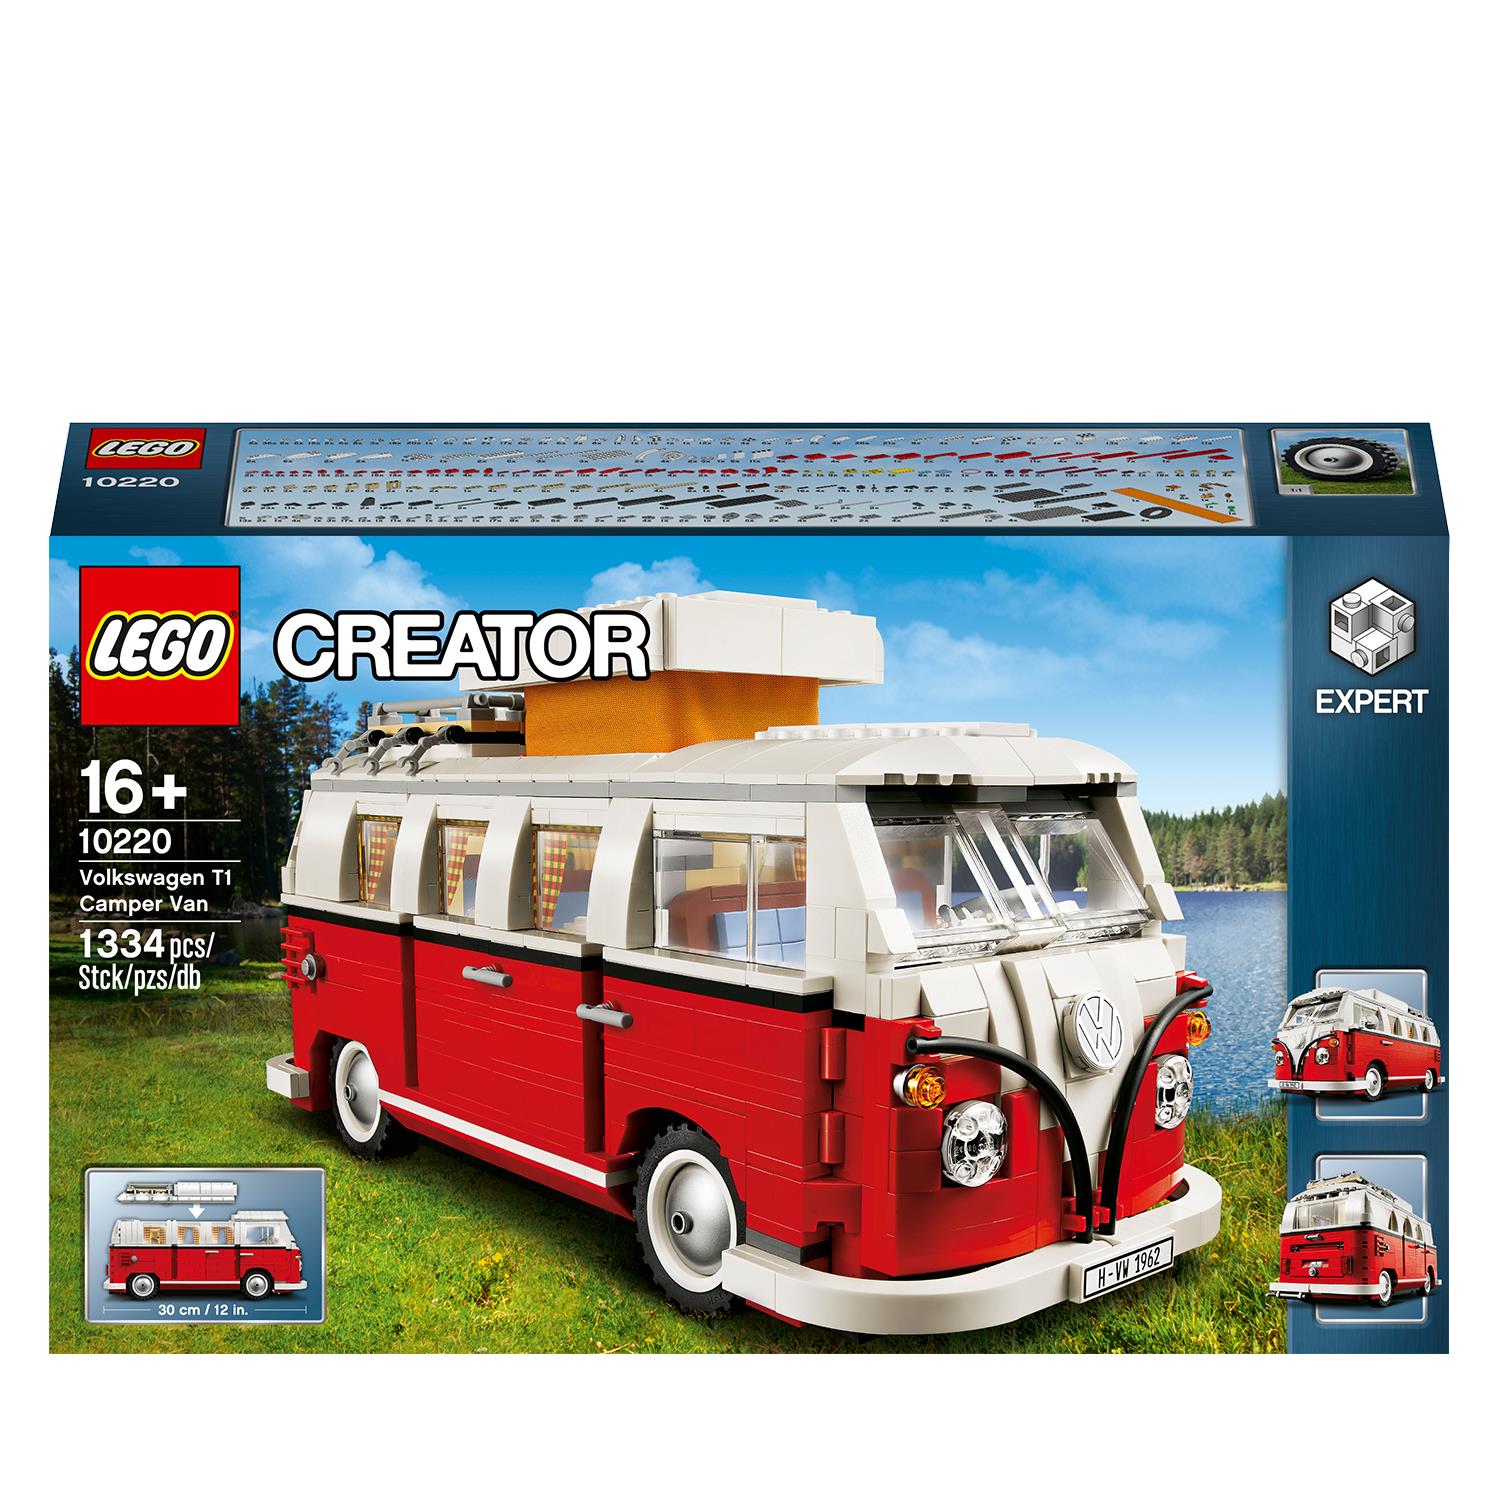 LEGO Creator Expert Volkswagen